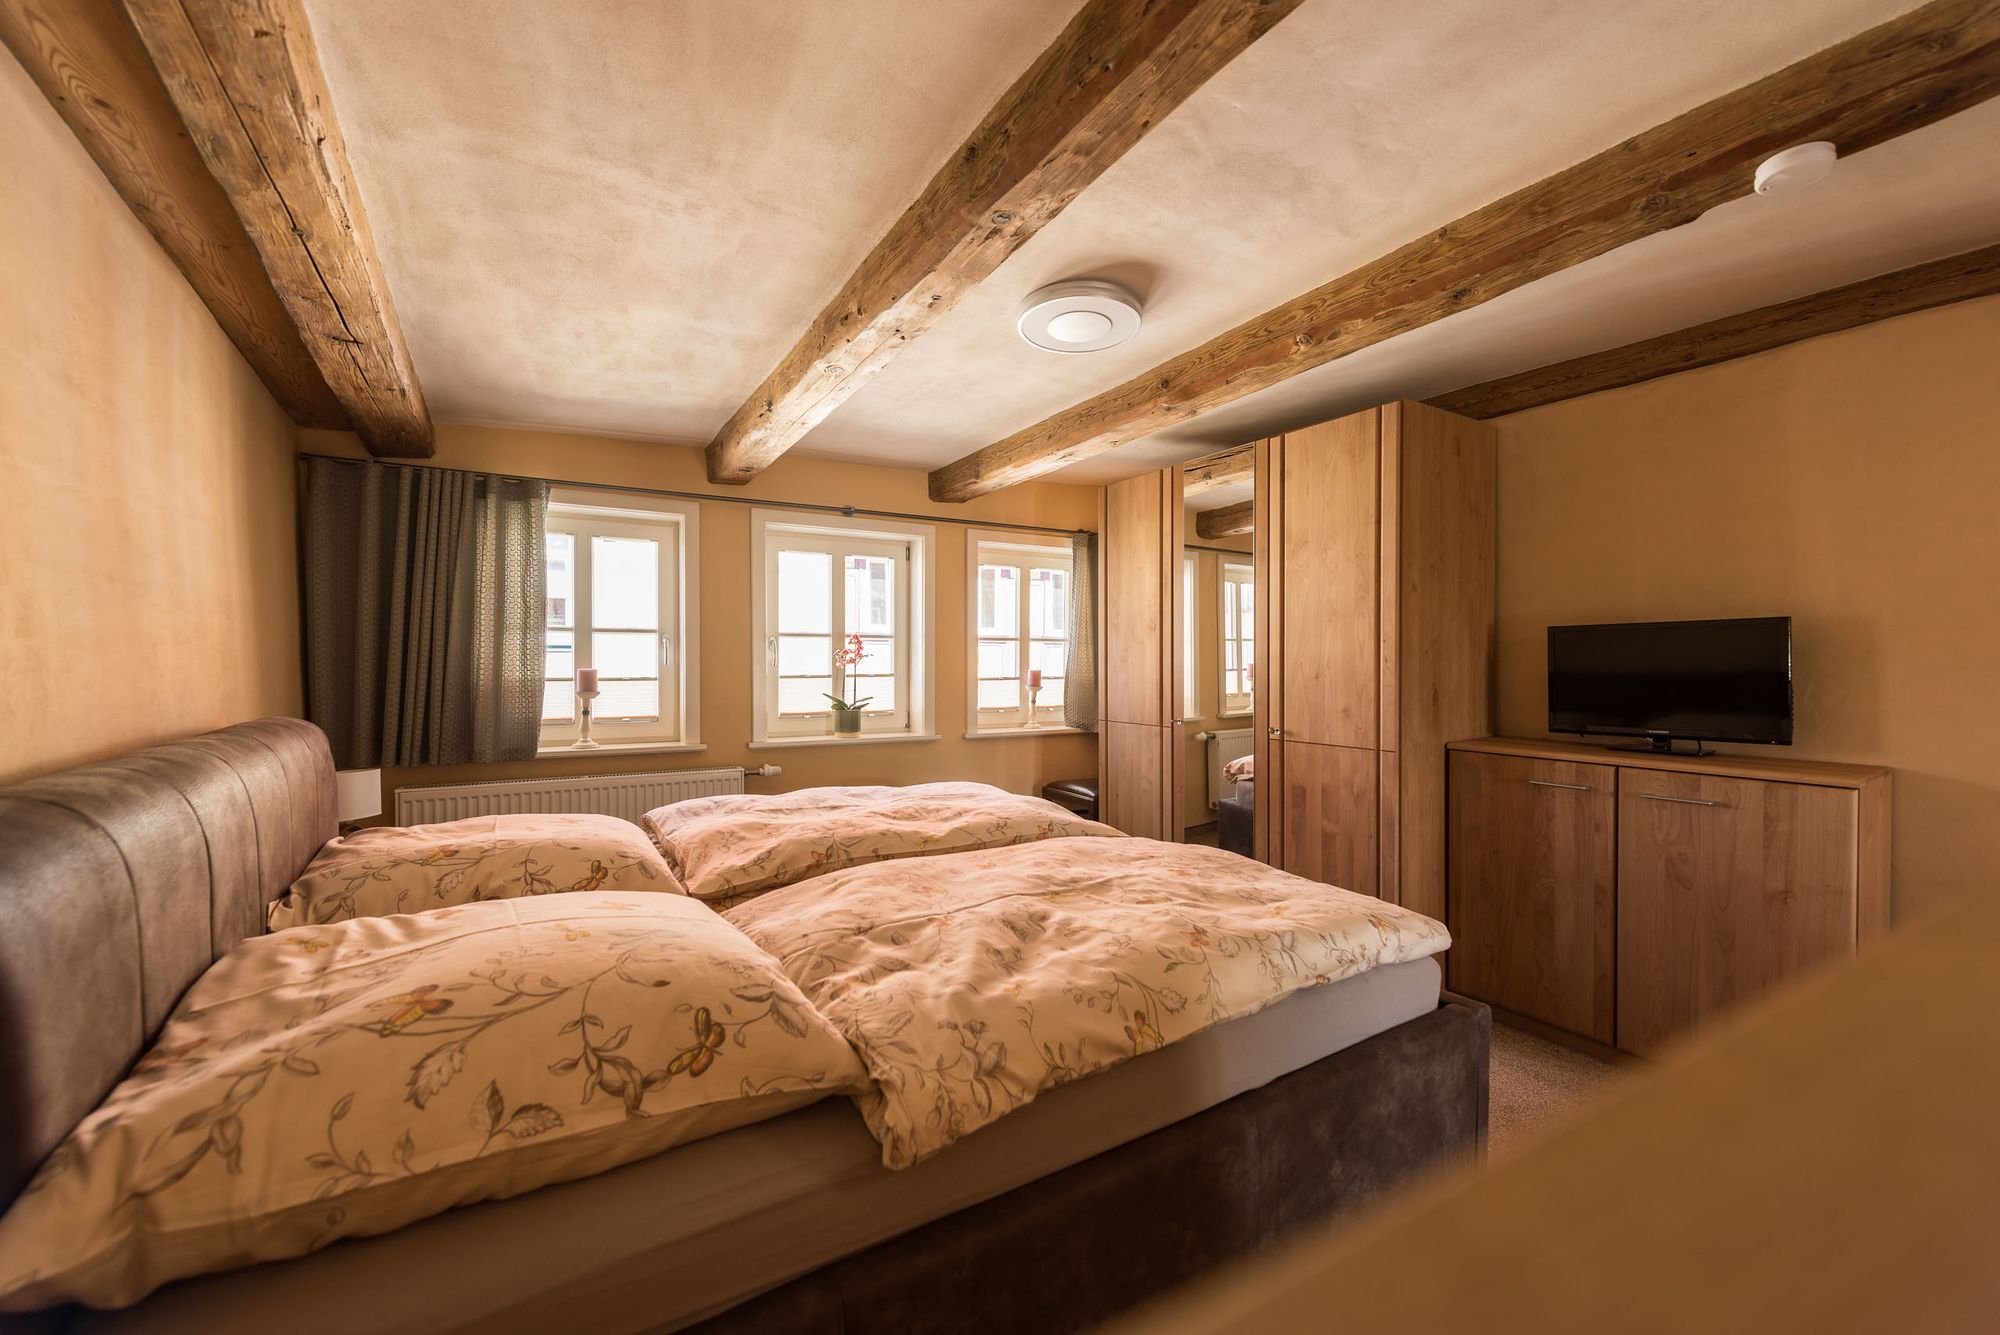 Das heimelige Schlafzimmer bietet neben einem bequemen Doppelbett auch die Möglichkeit zum Fernsehen.